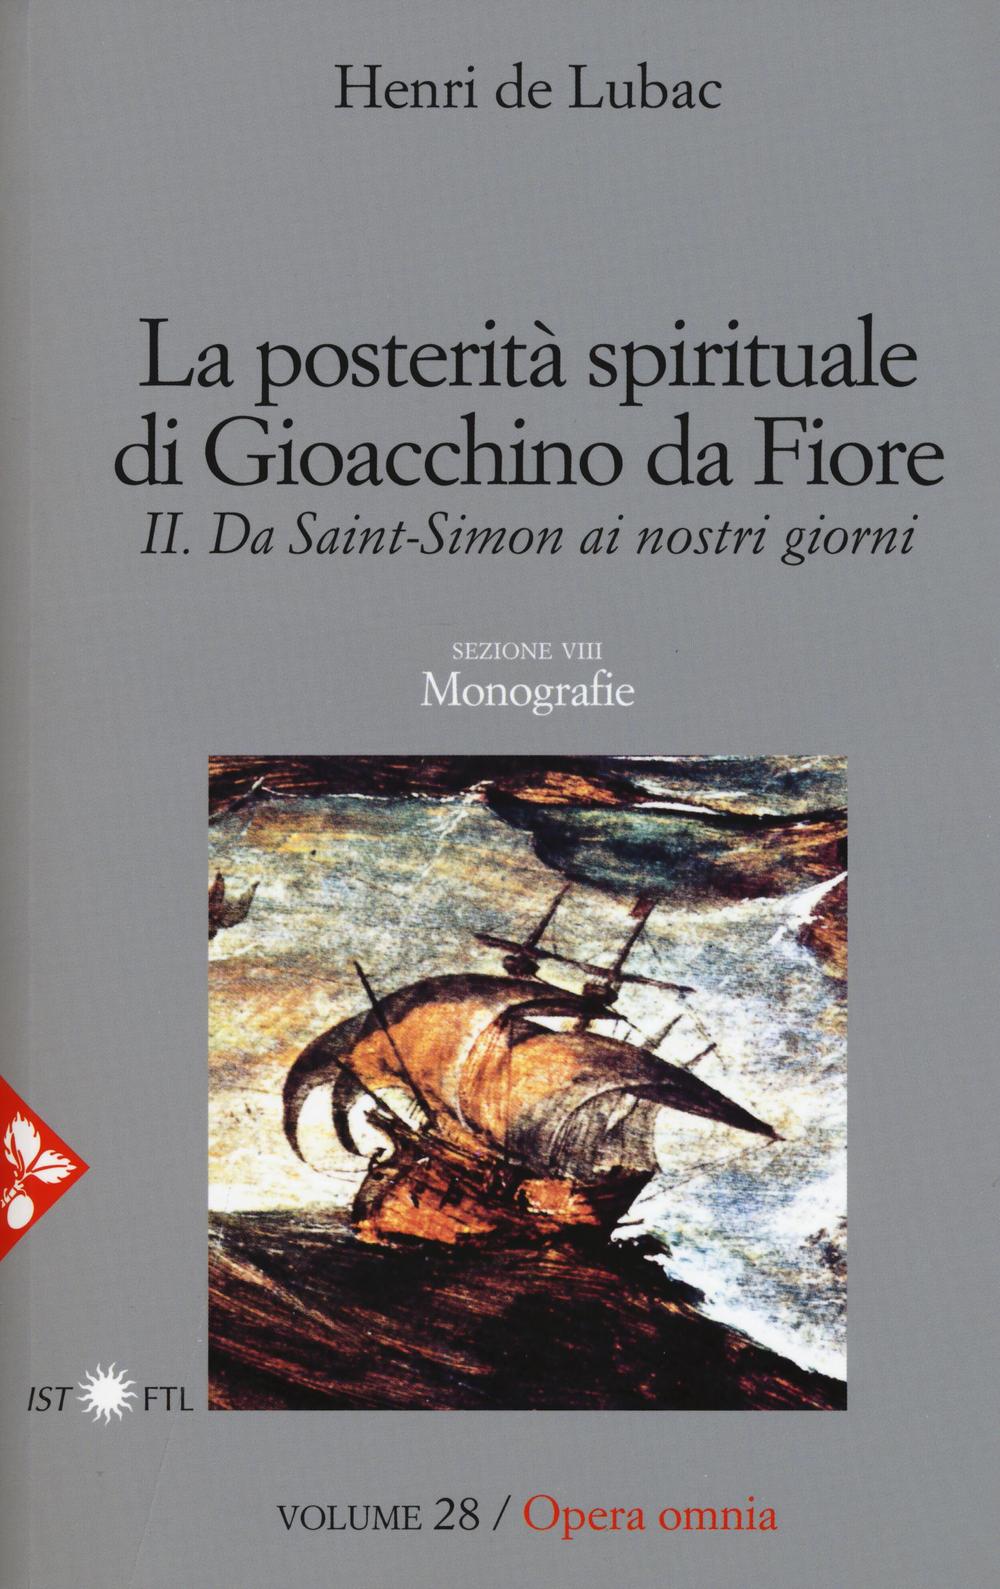 Opera omnia. Vol. 28: La posterità spirituale di Gioacchino da Fiore. Da Saint-Simon ai nostri giorni. Monografie